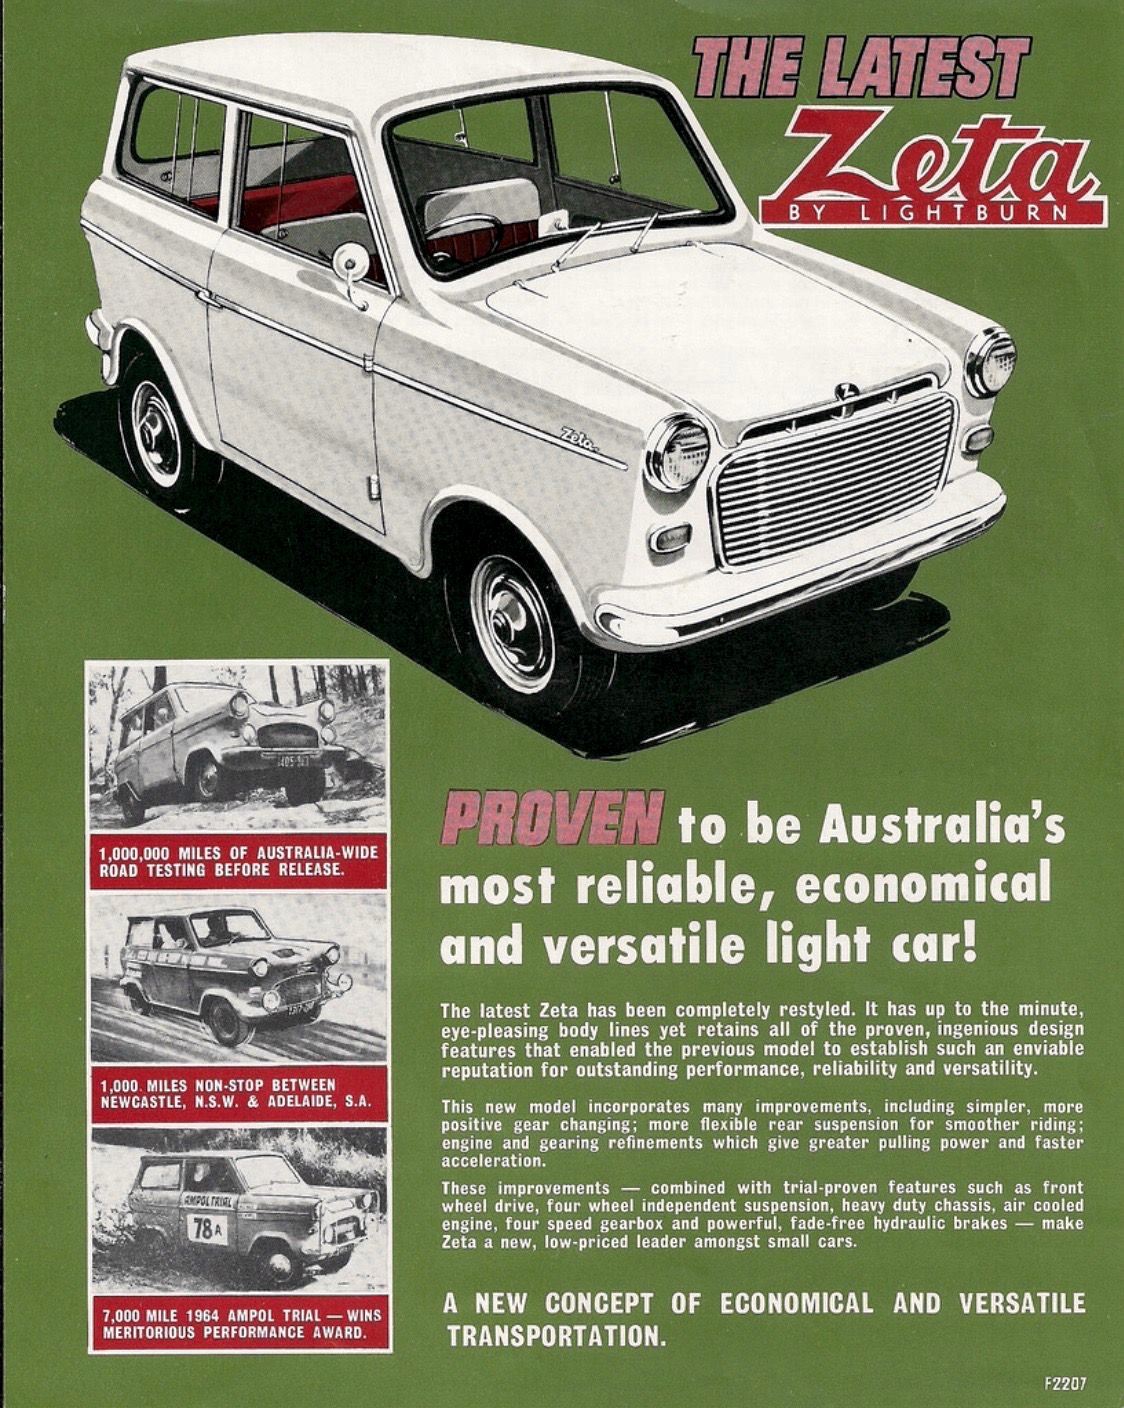 1963 Lightburn Zeta